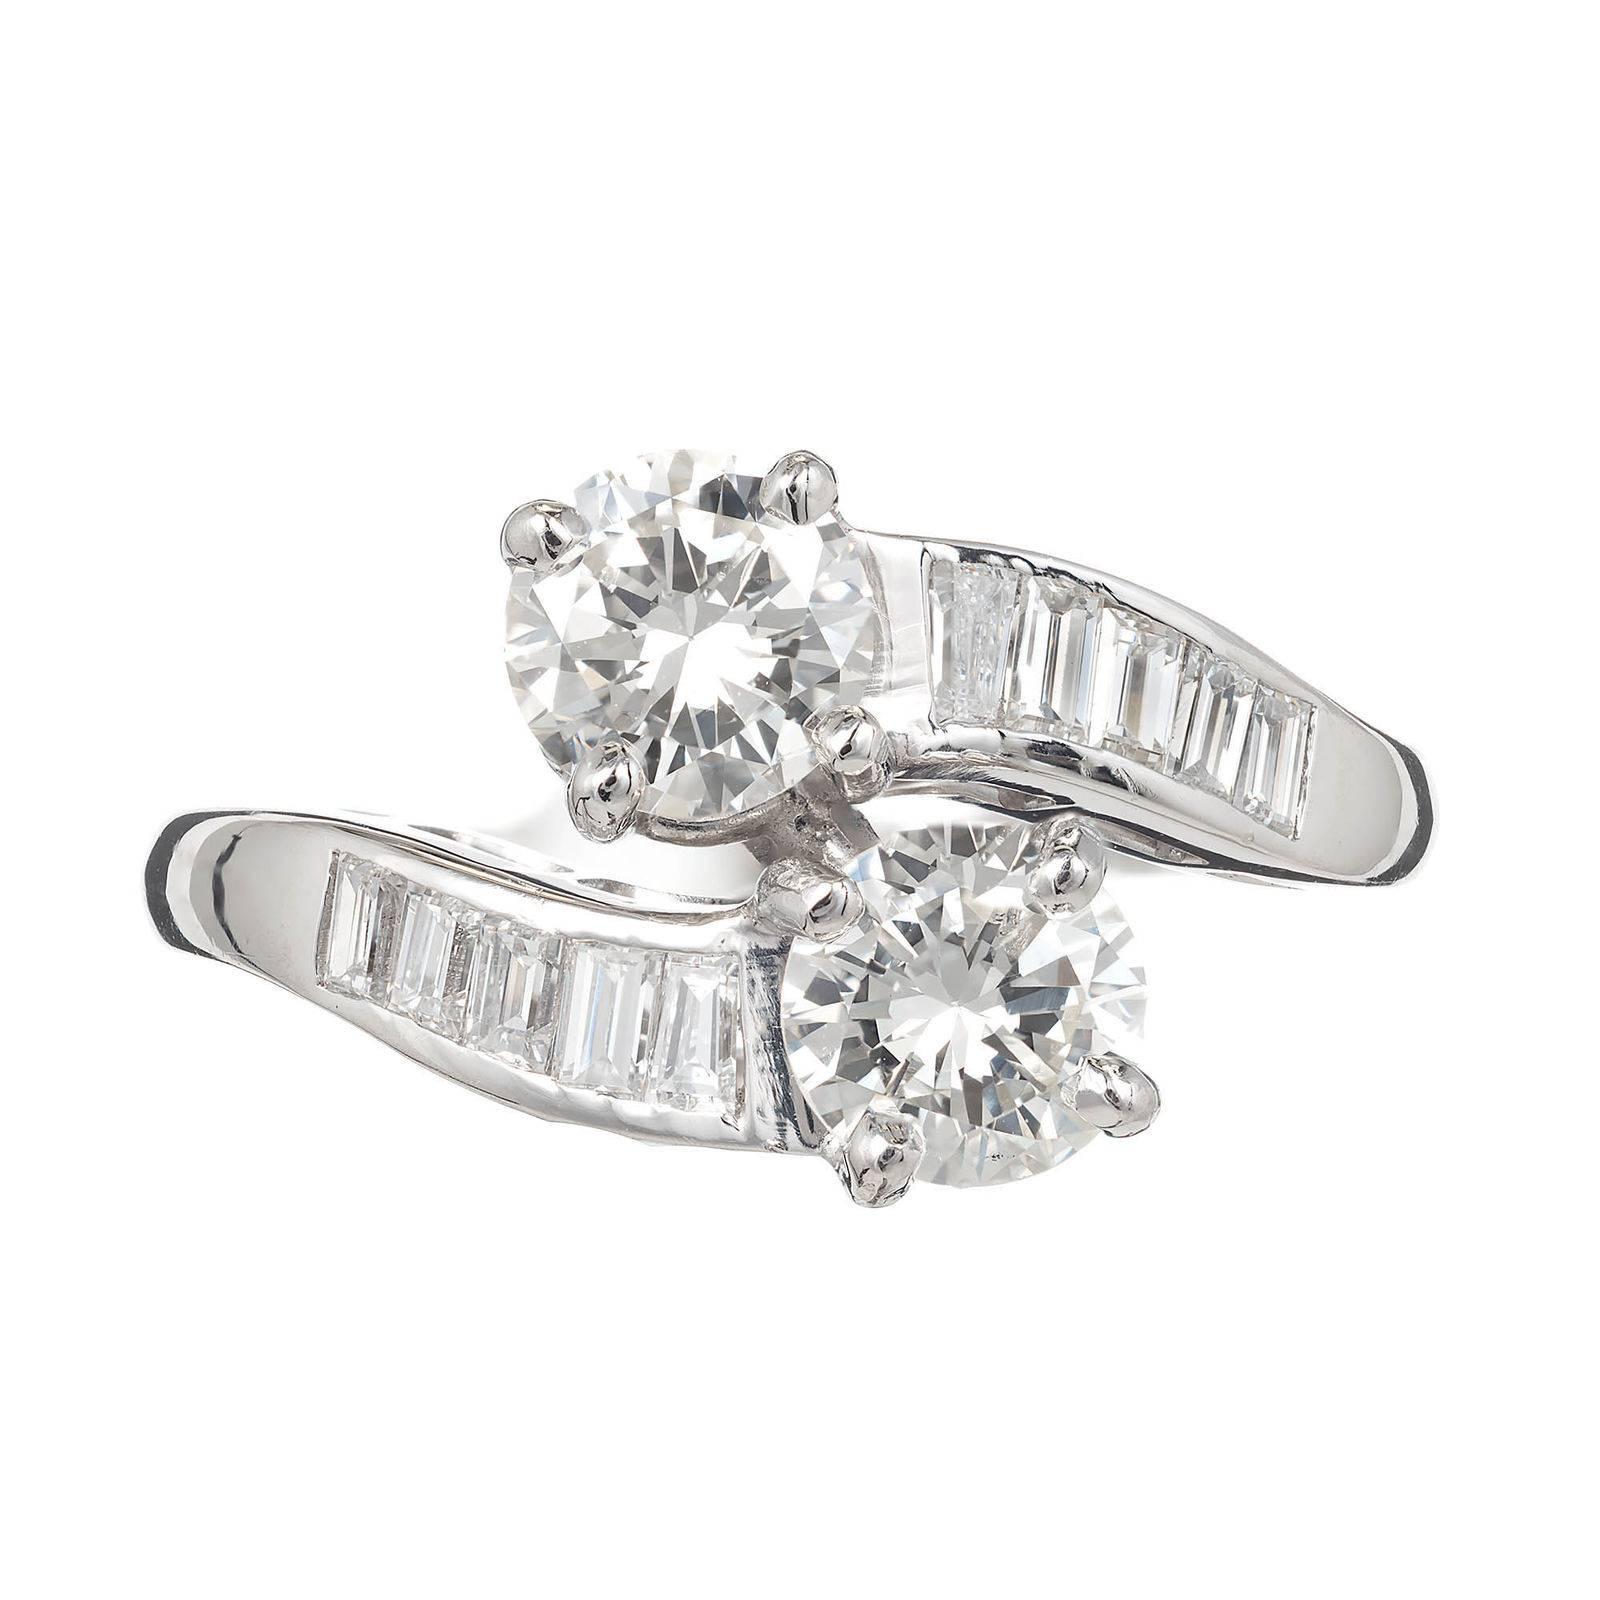 Vintage 1940 -1950 Platin Diamant Bypass Stil Verlobungsring. Baguette-Diamanten in Kanalfassung und 2 Diamanten im Übergangsschliff. Beide Edelsteinlabor zertifiziert hell und funkelnd. Diesem Ring ist das Design des 